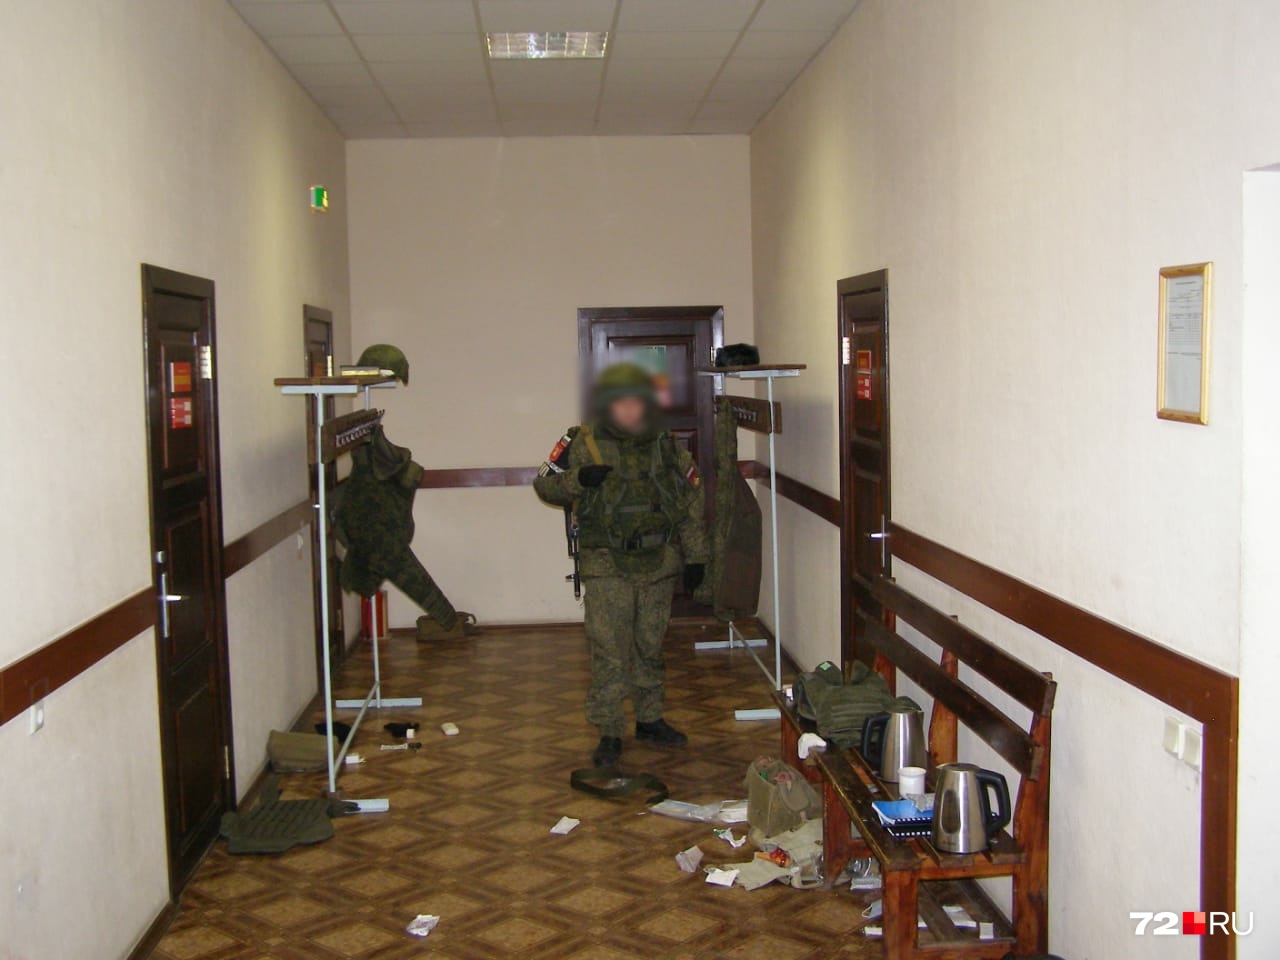 Полицейский охраняет вход в санчасть, где сидел задержанный Шамсутдинов